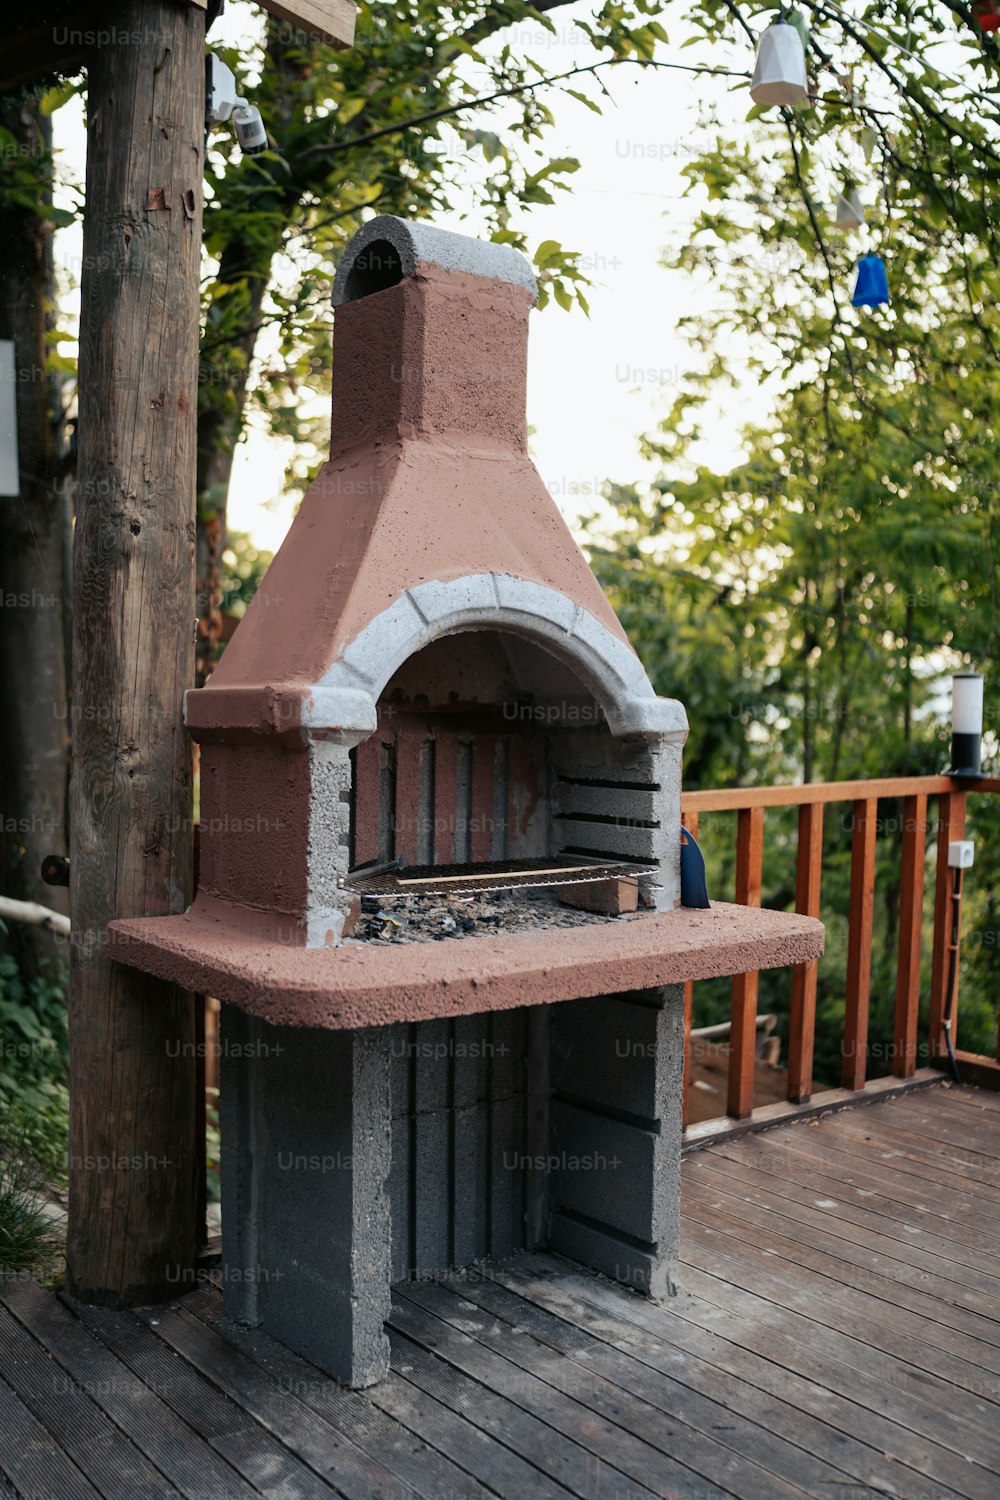 un horno de ladrillo sentado encima de una cubierta de madera